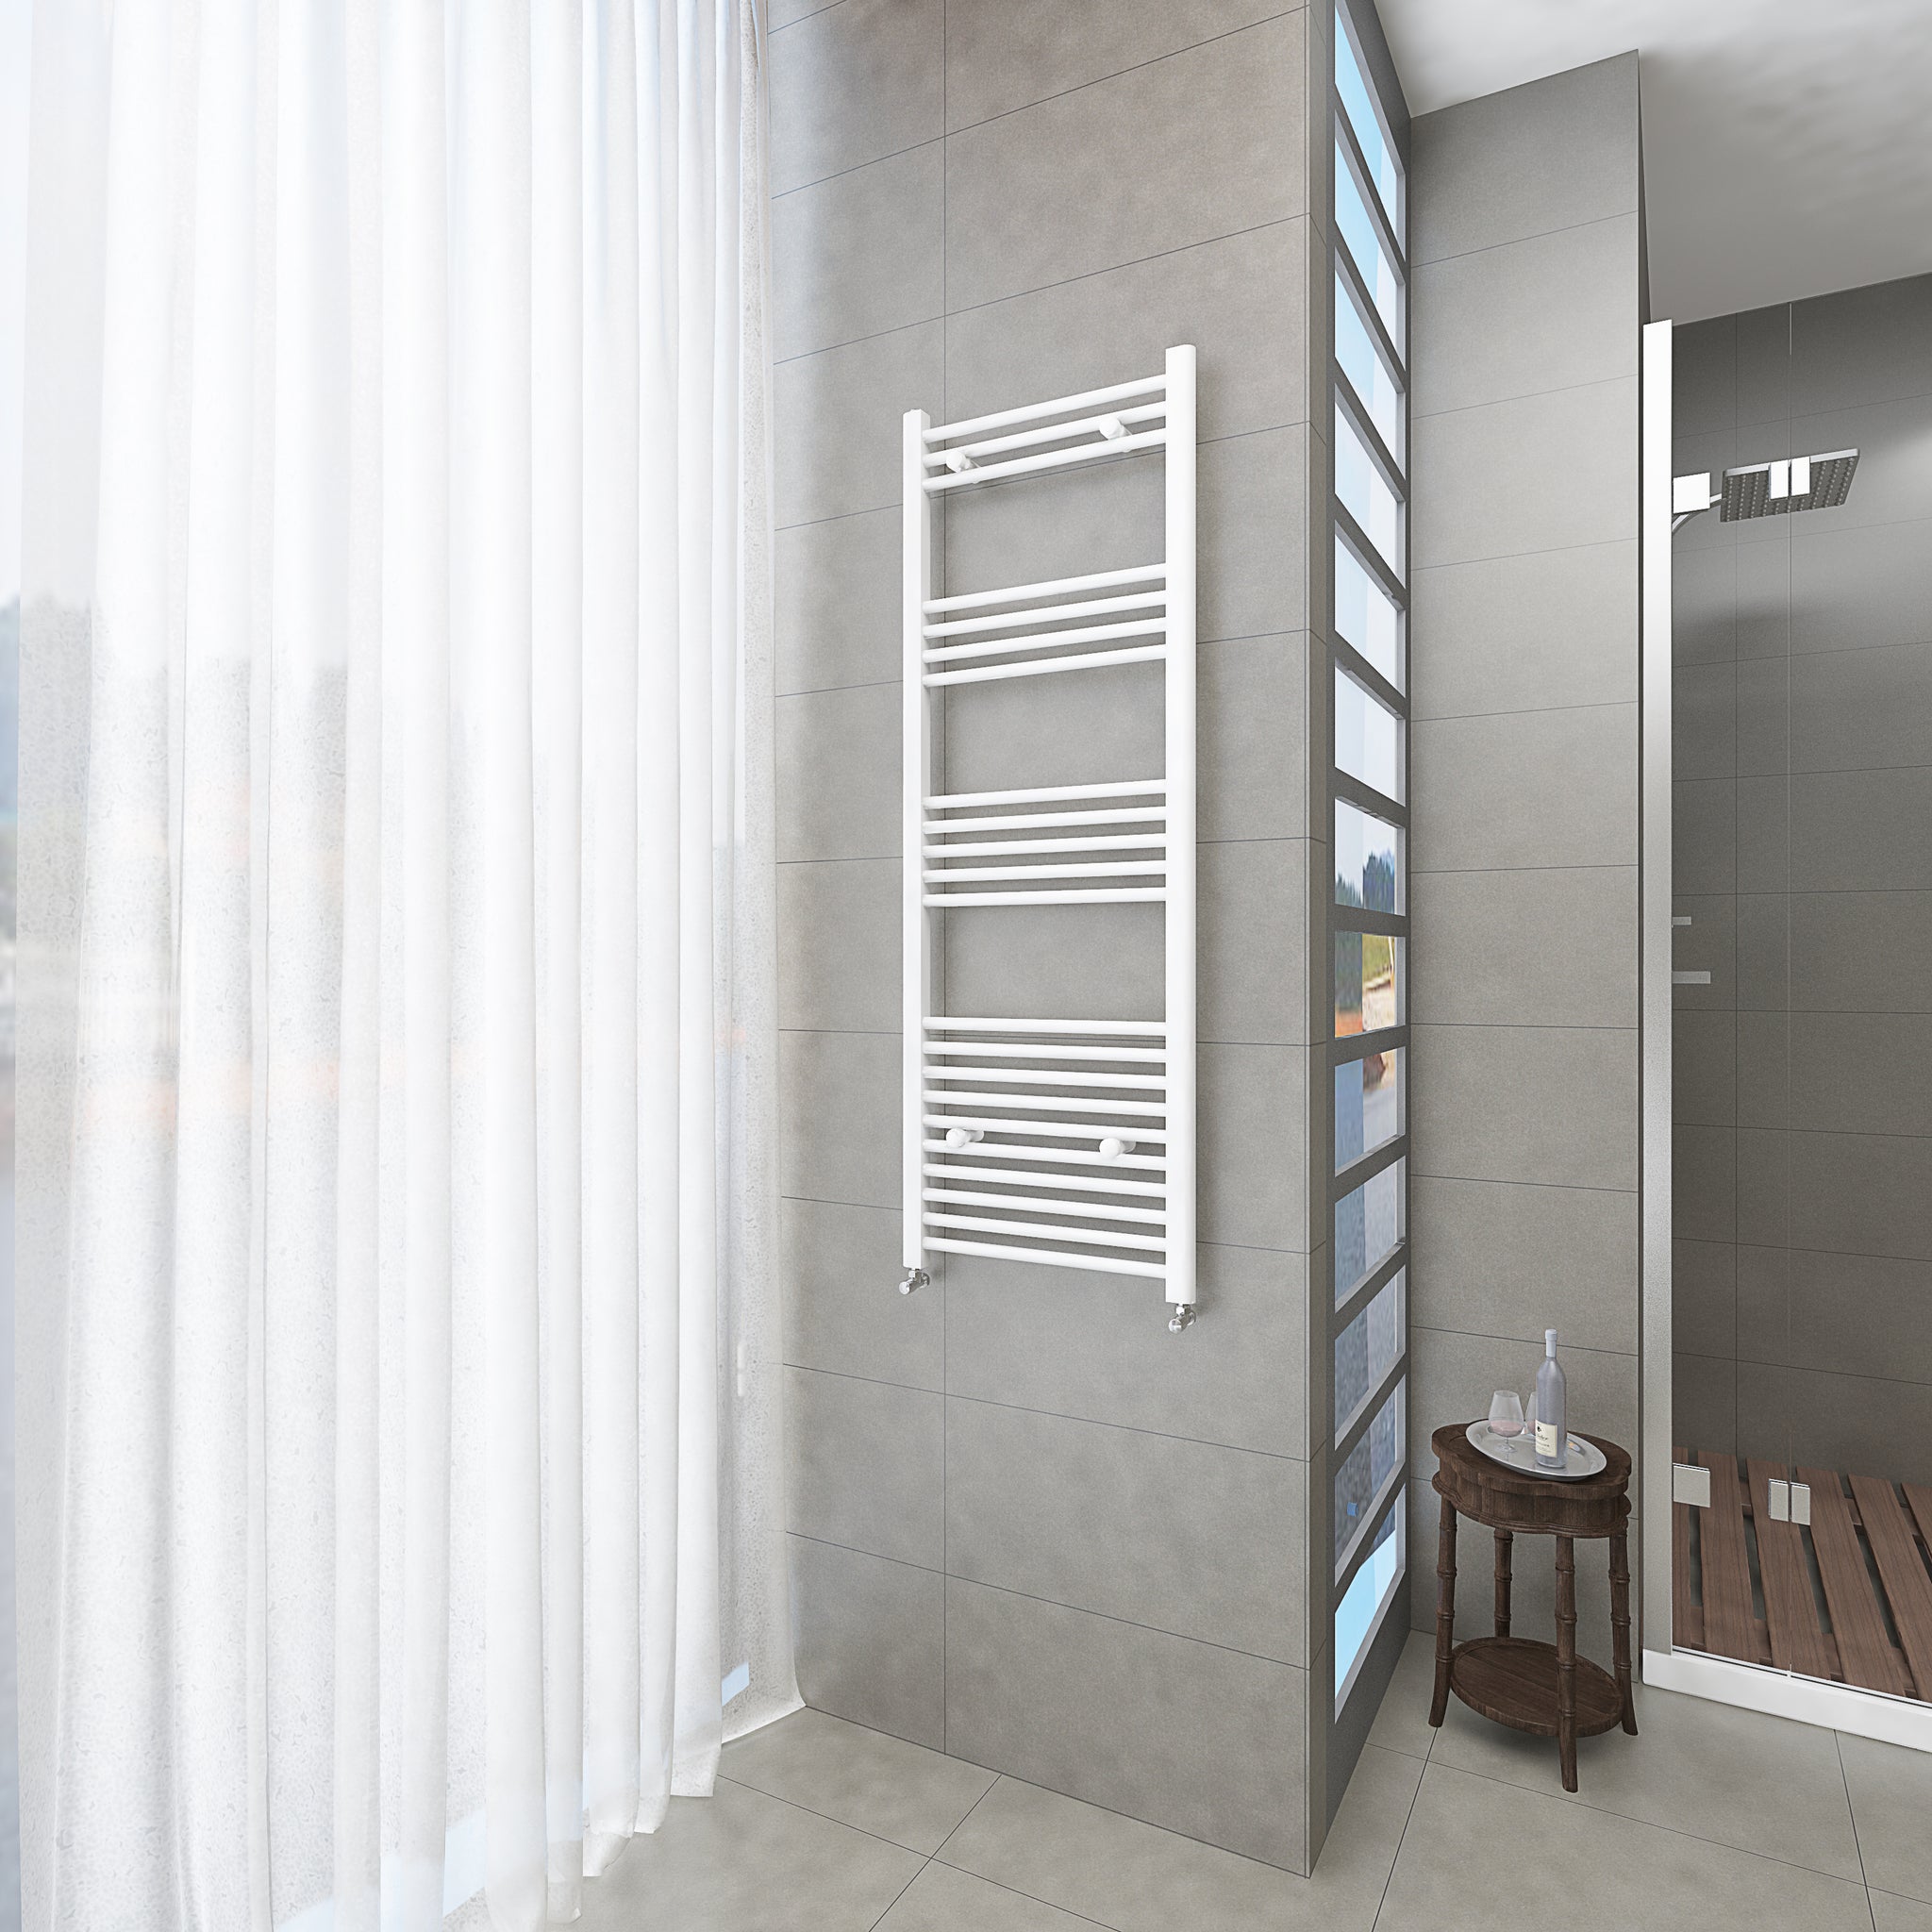 Badheizkörper Weiß - 140x50 CM Heizkörper und Handtuchtrockner in einem - Seitlicher Anschluss - Rauchfreie Kohleheizung für das Badezimmer